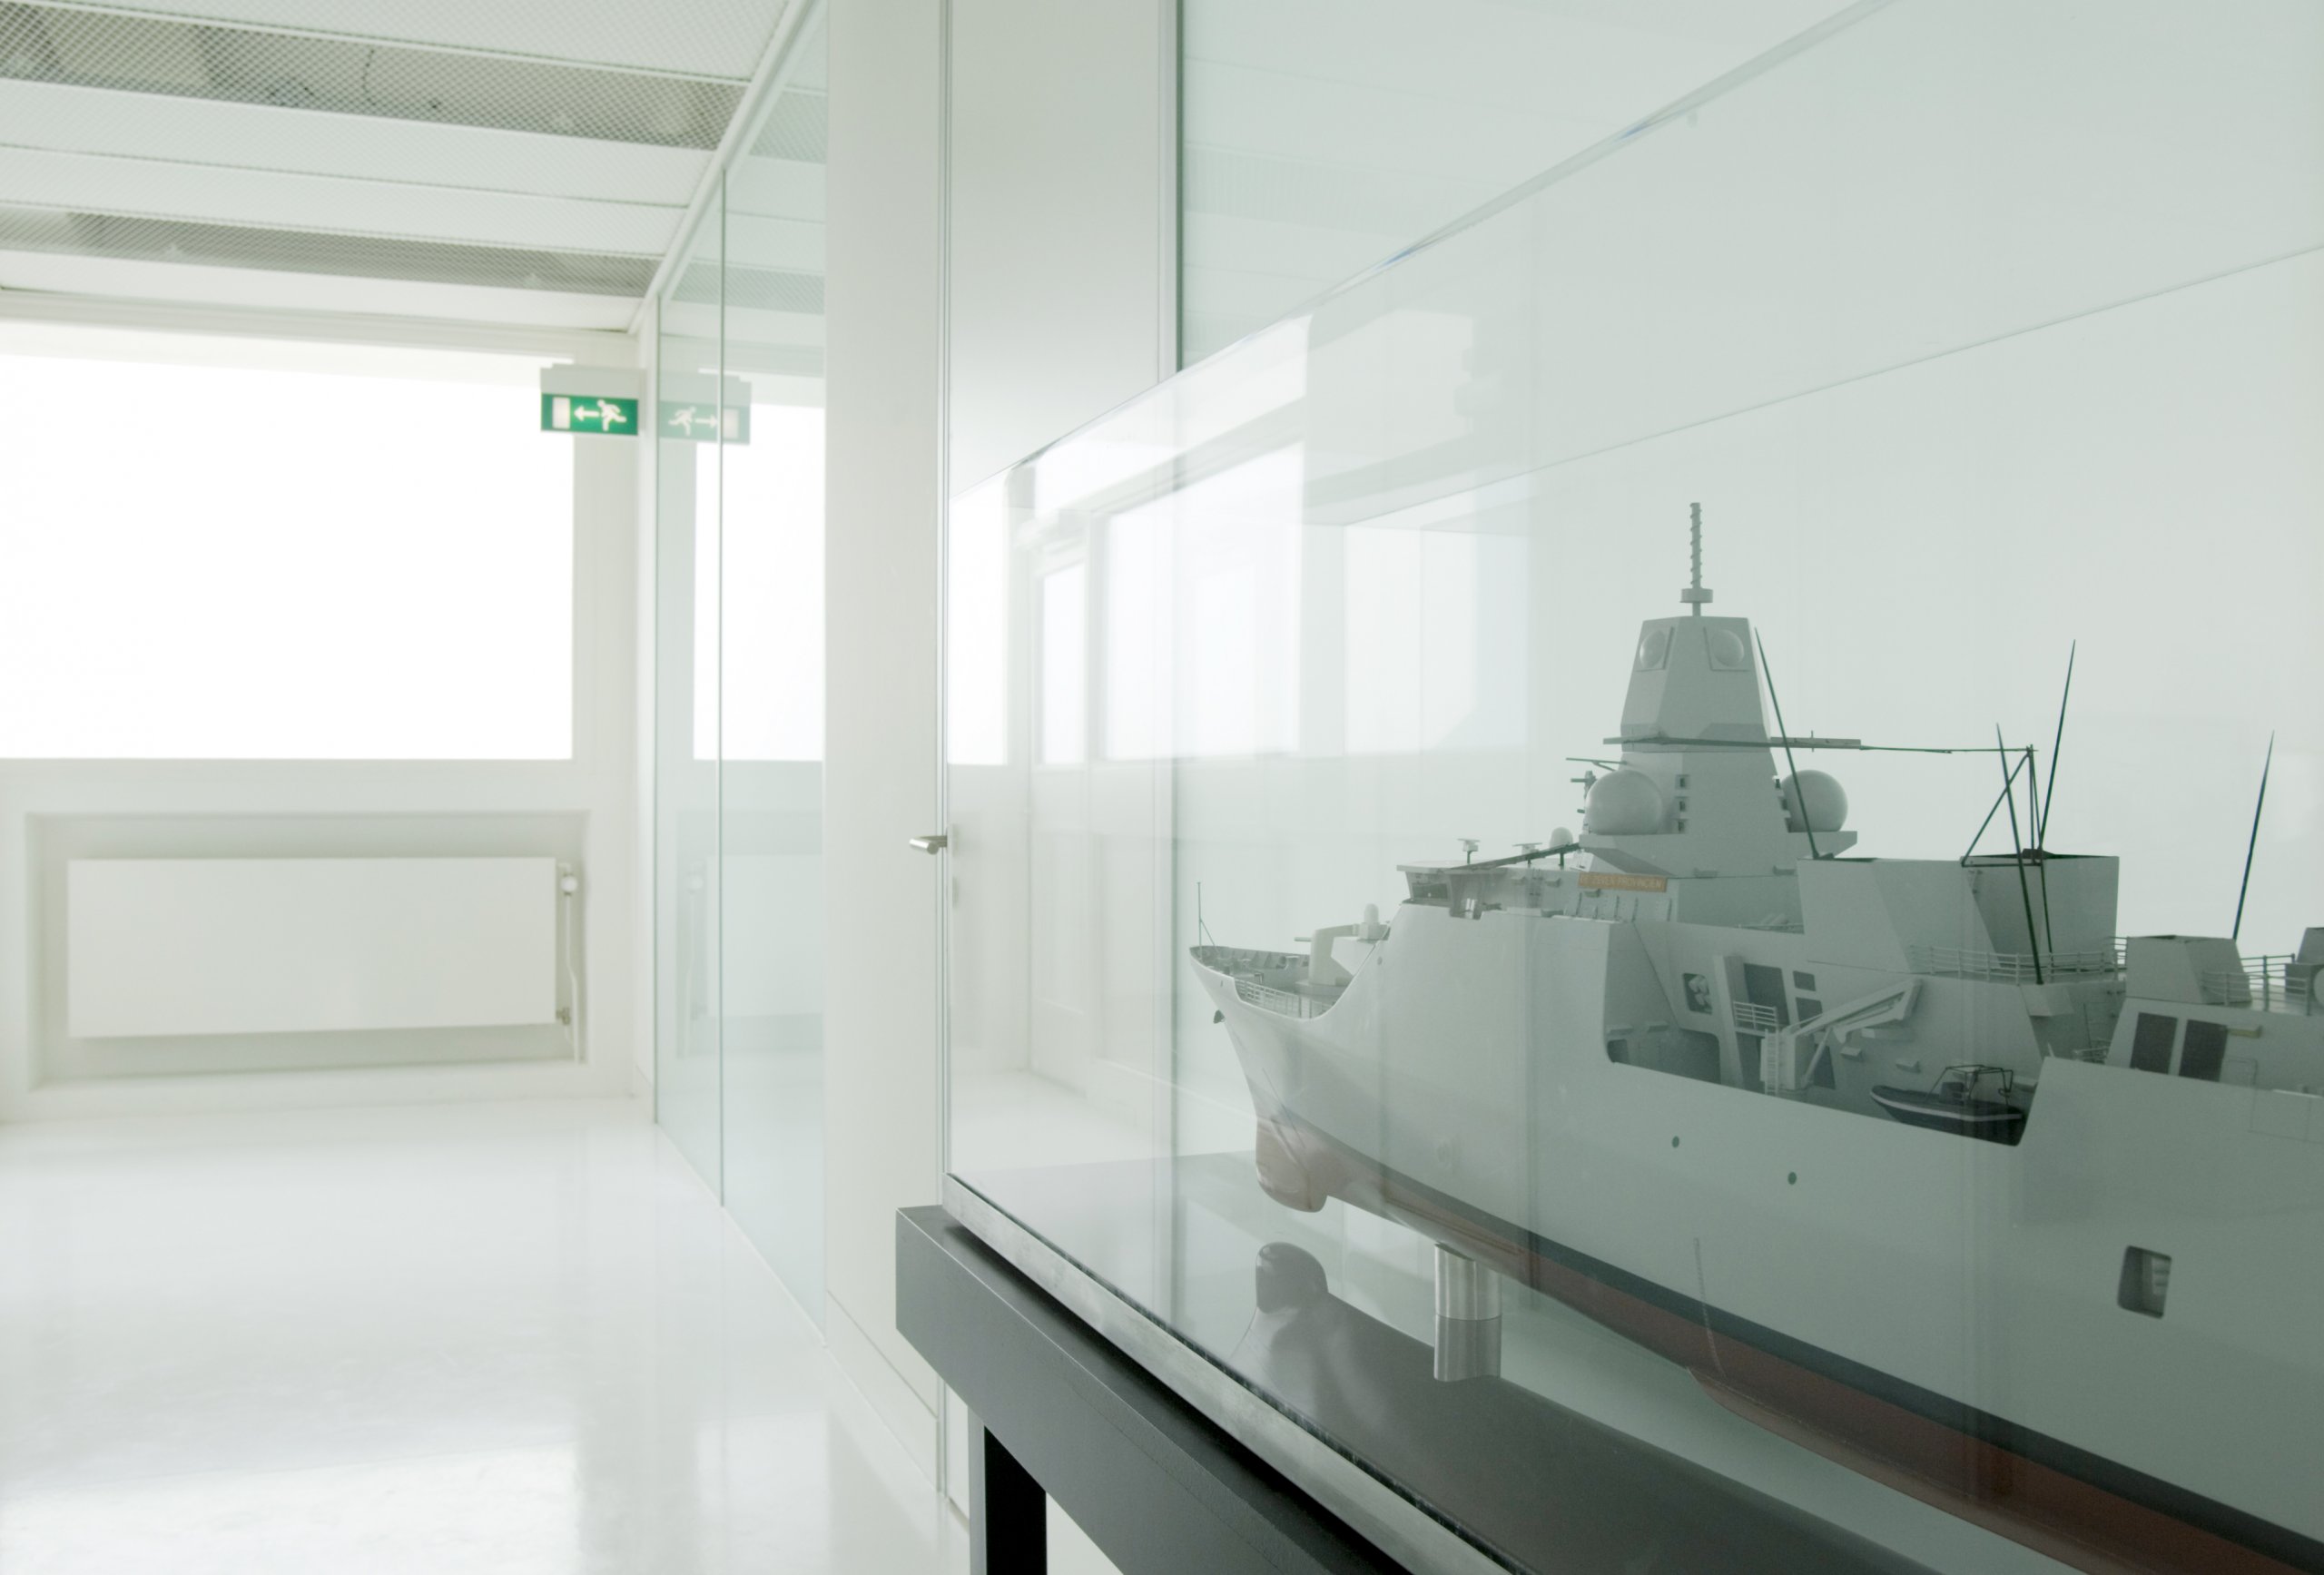 Interieur van getransformeerde logiesgebouw naar Admiraliteitsraad van het directieberaad van het Commando der Zeestrijdkrachten in Den Helder